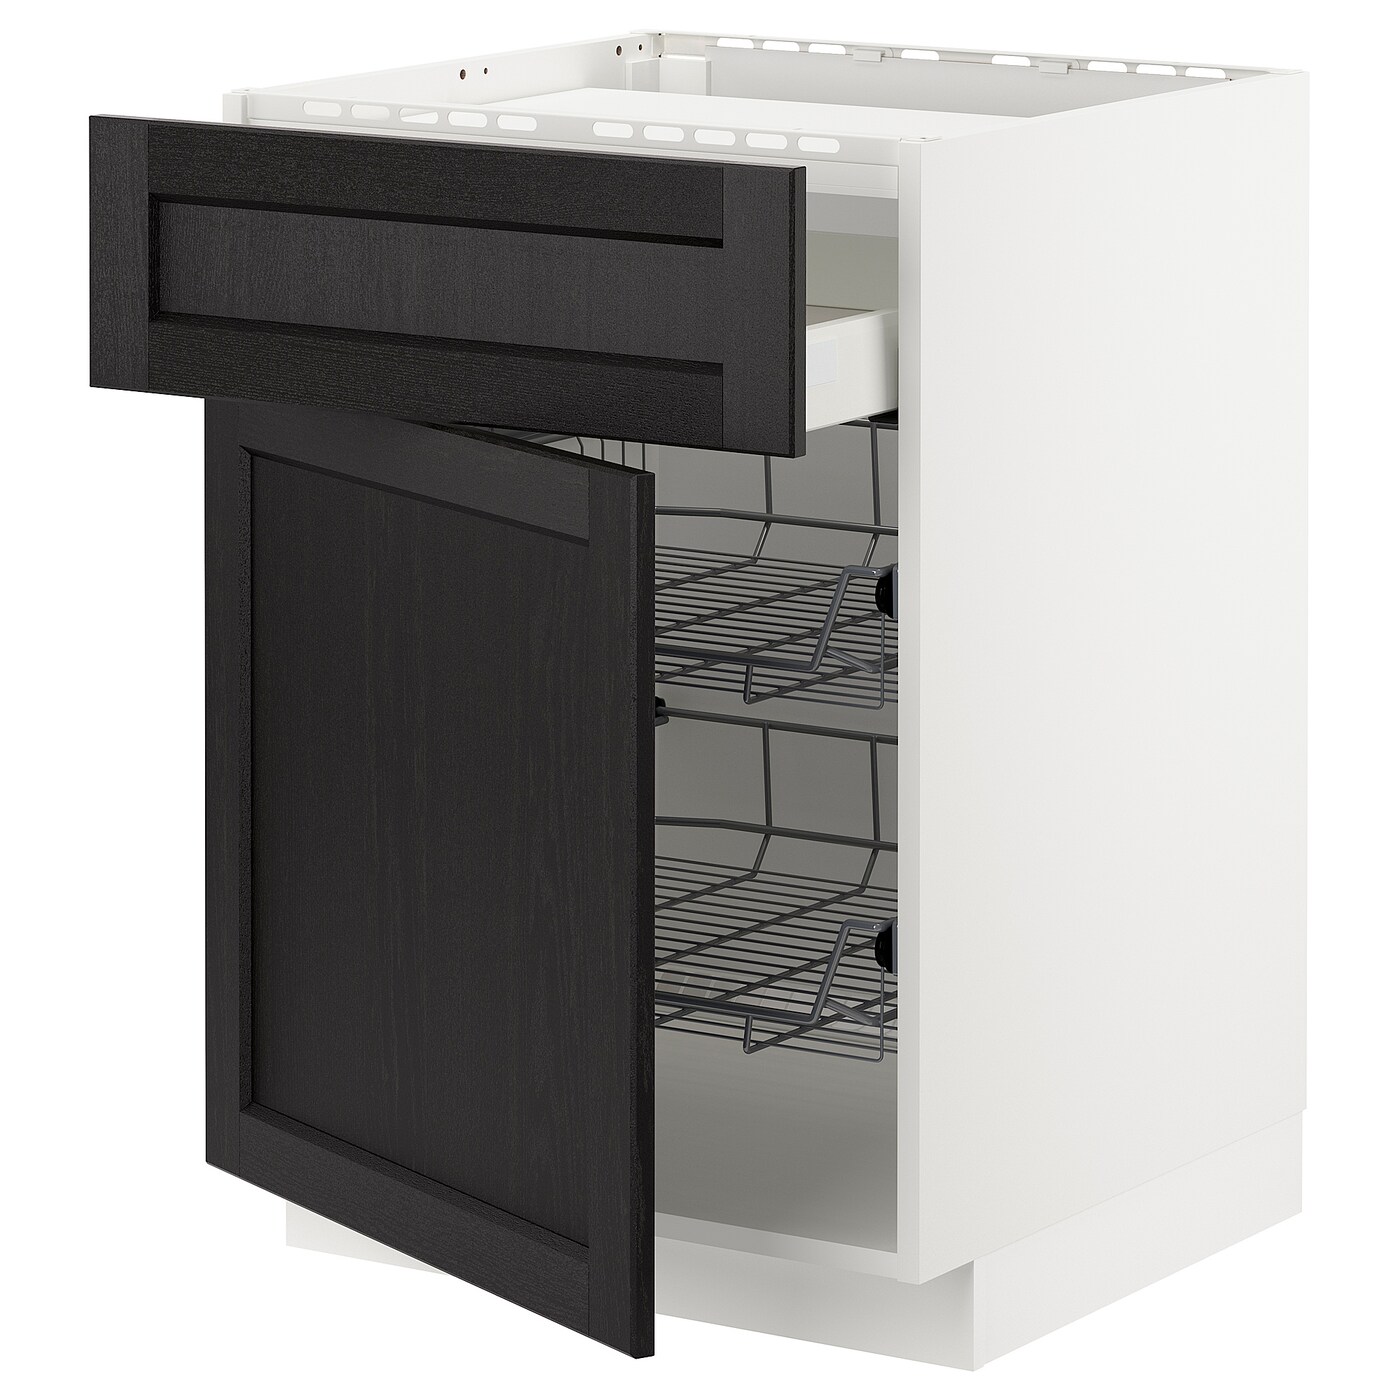 Напольный кухонный шкаф  - IKEA METOD MAXIMERA, 88x62x80см, черный/белый, МЕТОД МАКСИМЕРА ИКЕА